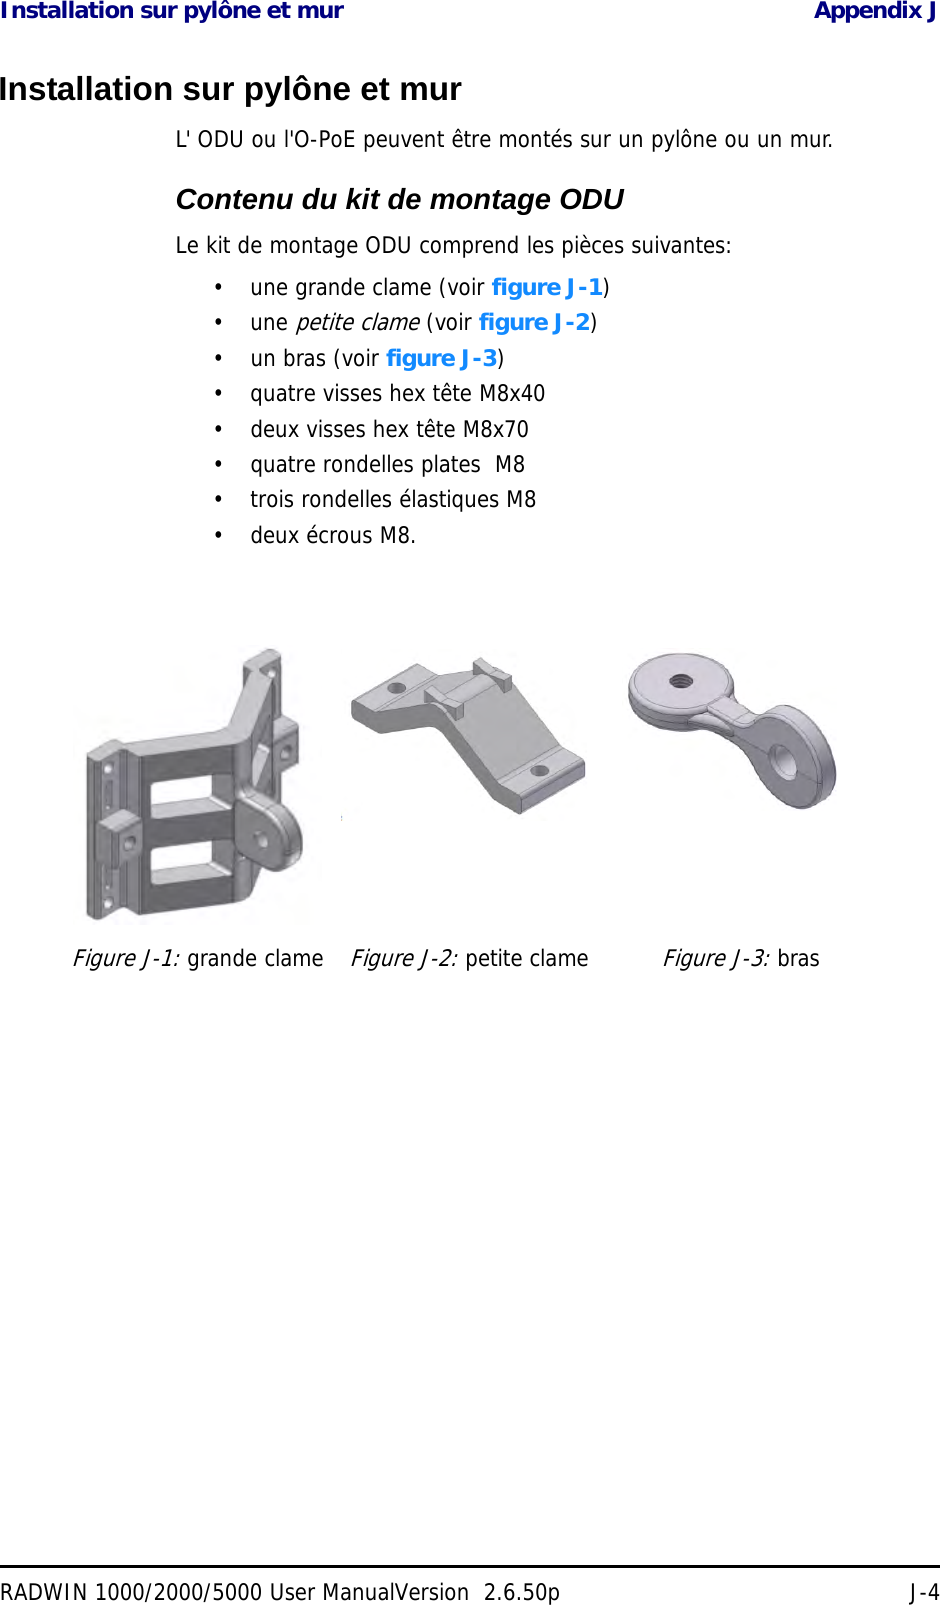 Installation sur pylône et mur Appendix JRADWIN 1000/2000/5000 User ManualVersion  2.6.50p J-4Installation sur pylône et murL&apos; ODU ou l&apos;O-PoE peuvent être montés sur un pylône ou un mur.Contenu du kit de montage ODULe kit de montage ODU comprend les pièces suivantes:• une grande clame (voir figure J-1)• une petite clame (voir figure J-2)• un bras (voir figure J-3)• quatre visses hex tête M8x40• deux visses hex tête M8x70• quatre rondelles plates  M8• trois rondelles élastiques M8• deux écrous M8.Figure J-1: grande clameFigure J-2: petite clameFigure J-3: bras